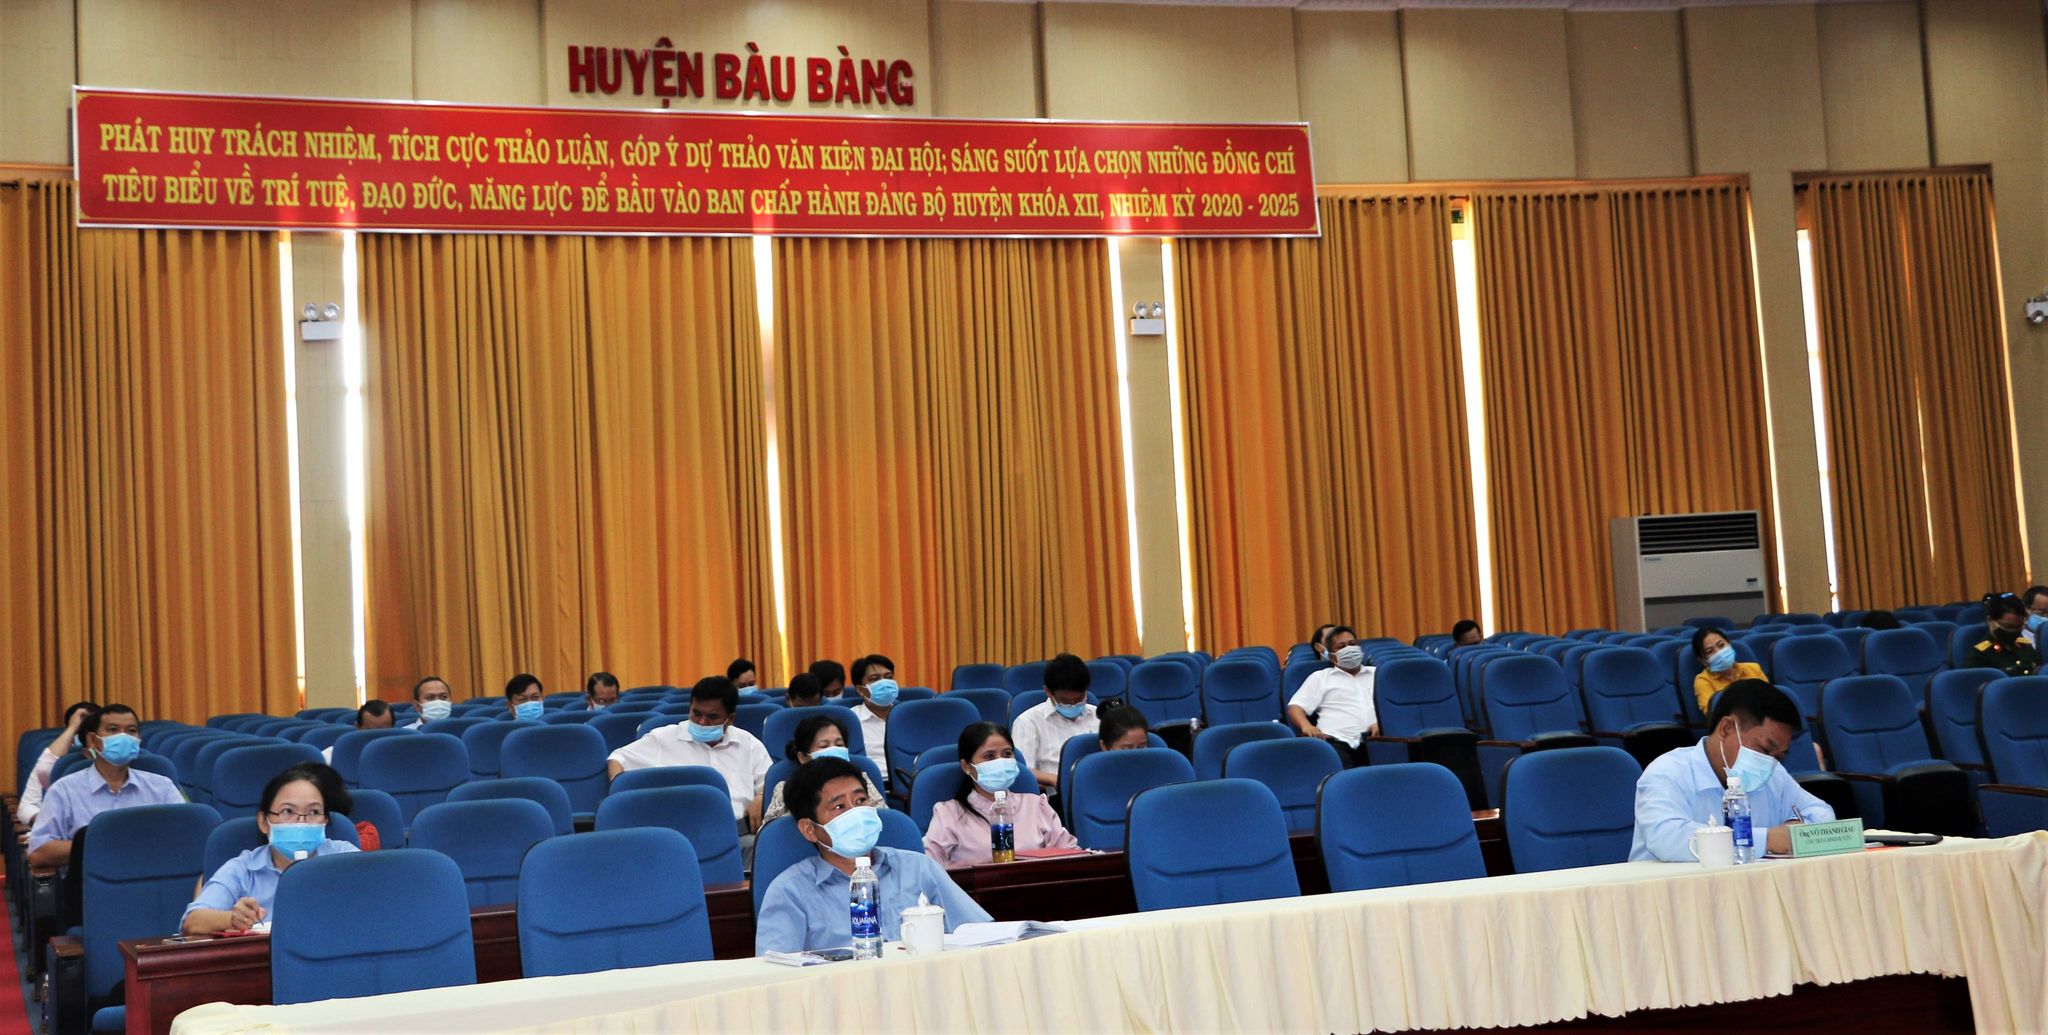 Các đại biểu tham dự Hội nghị tại điểm cầu huyện Bàu Bàng.